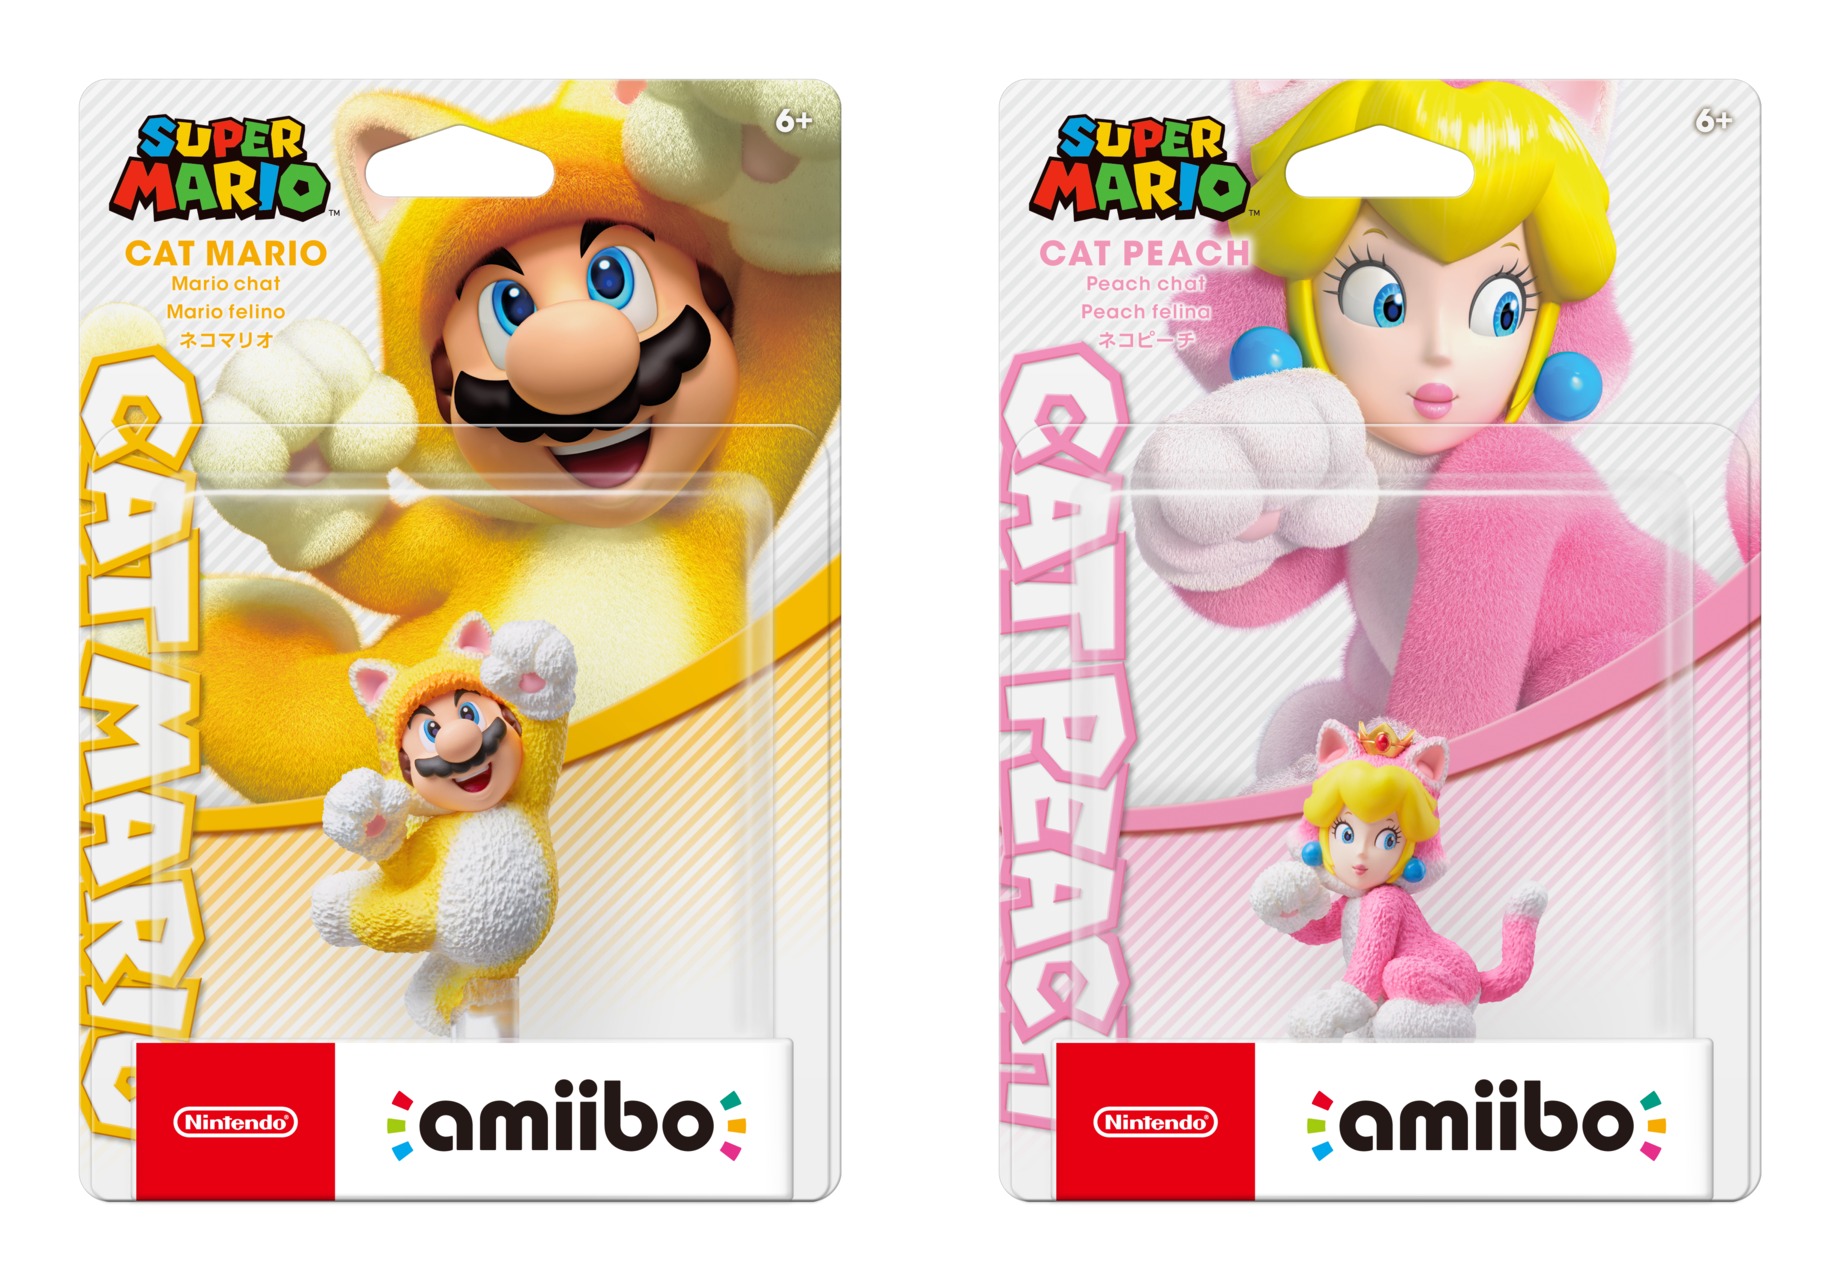 Cat Mario and Cat Peach amiibo revealed